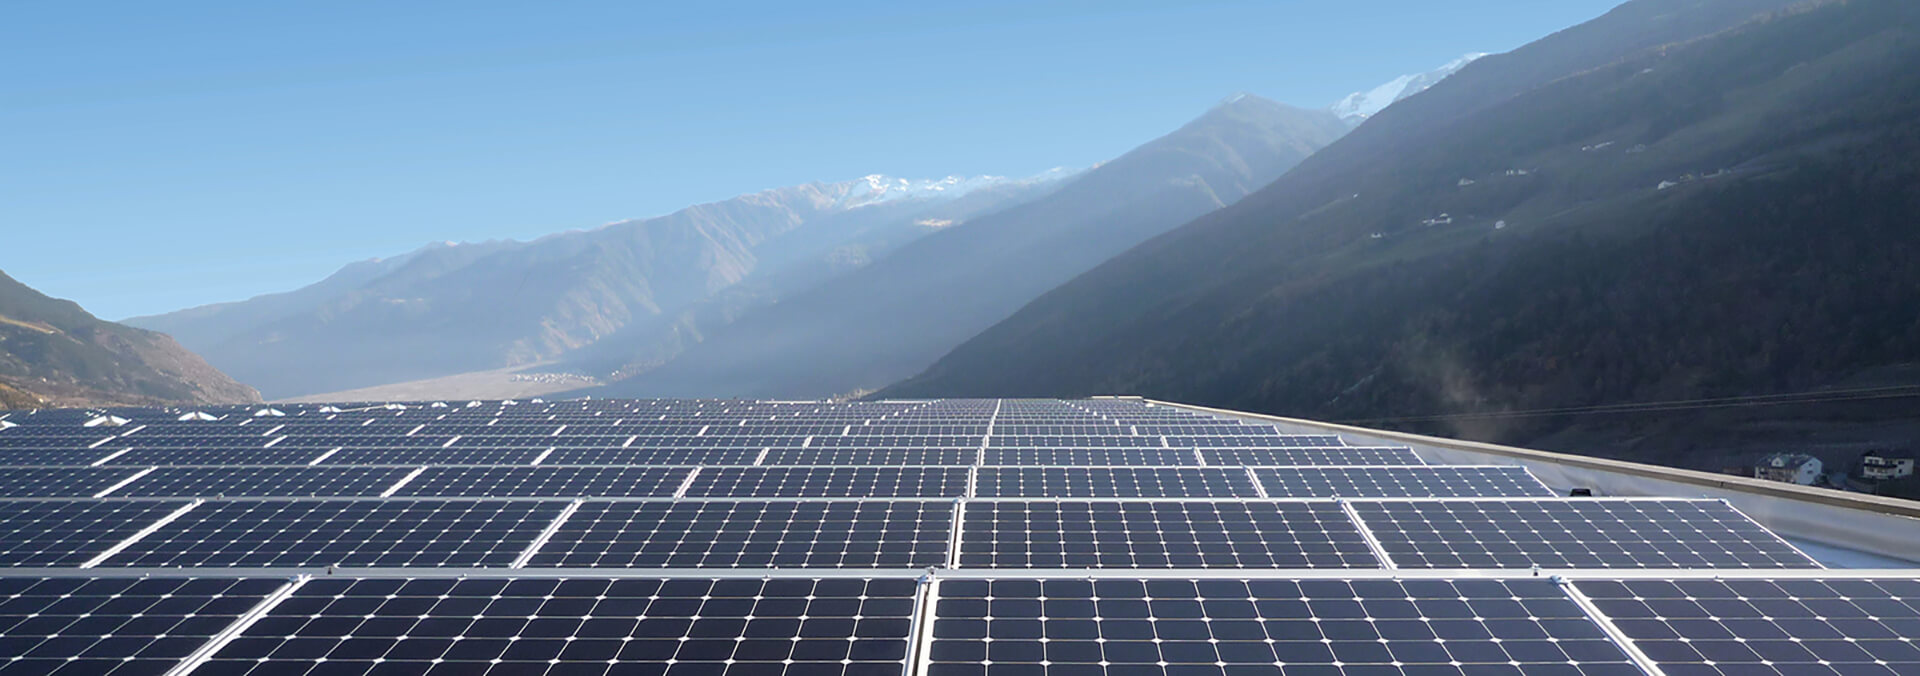 Solar Energy Company Solar Panels SunPower Global